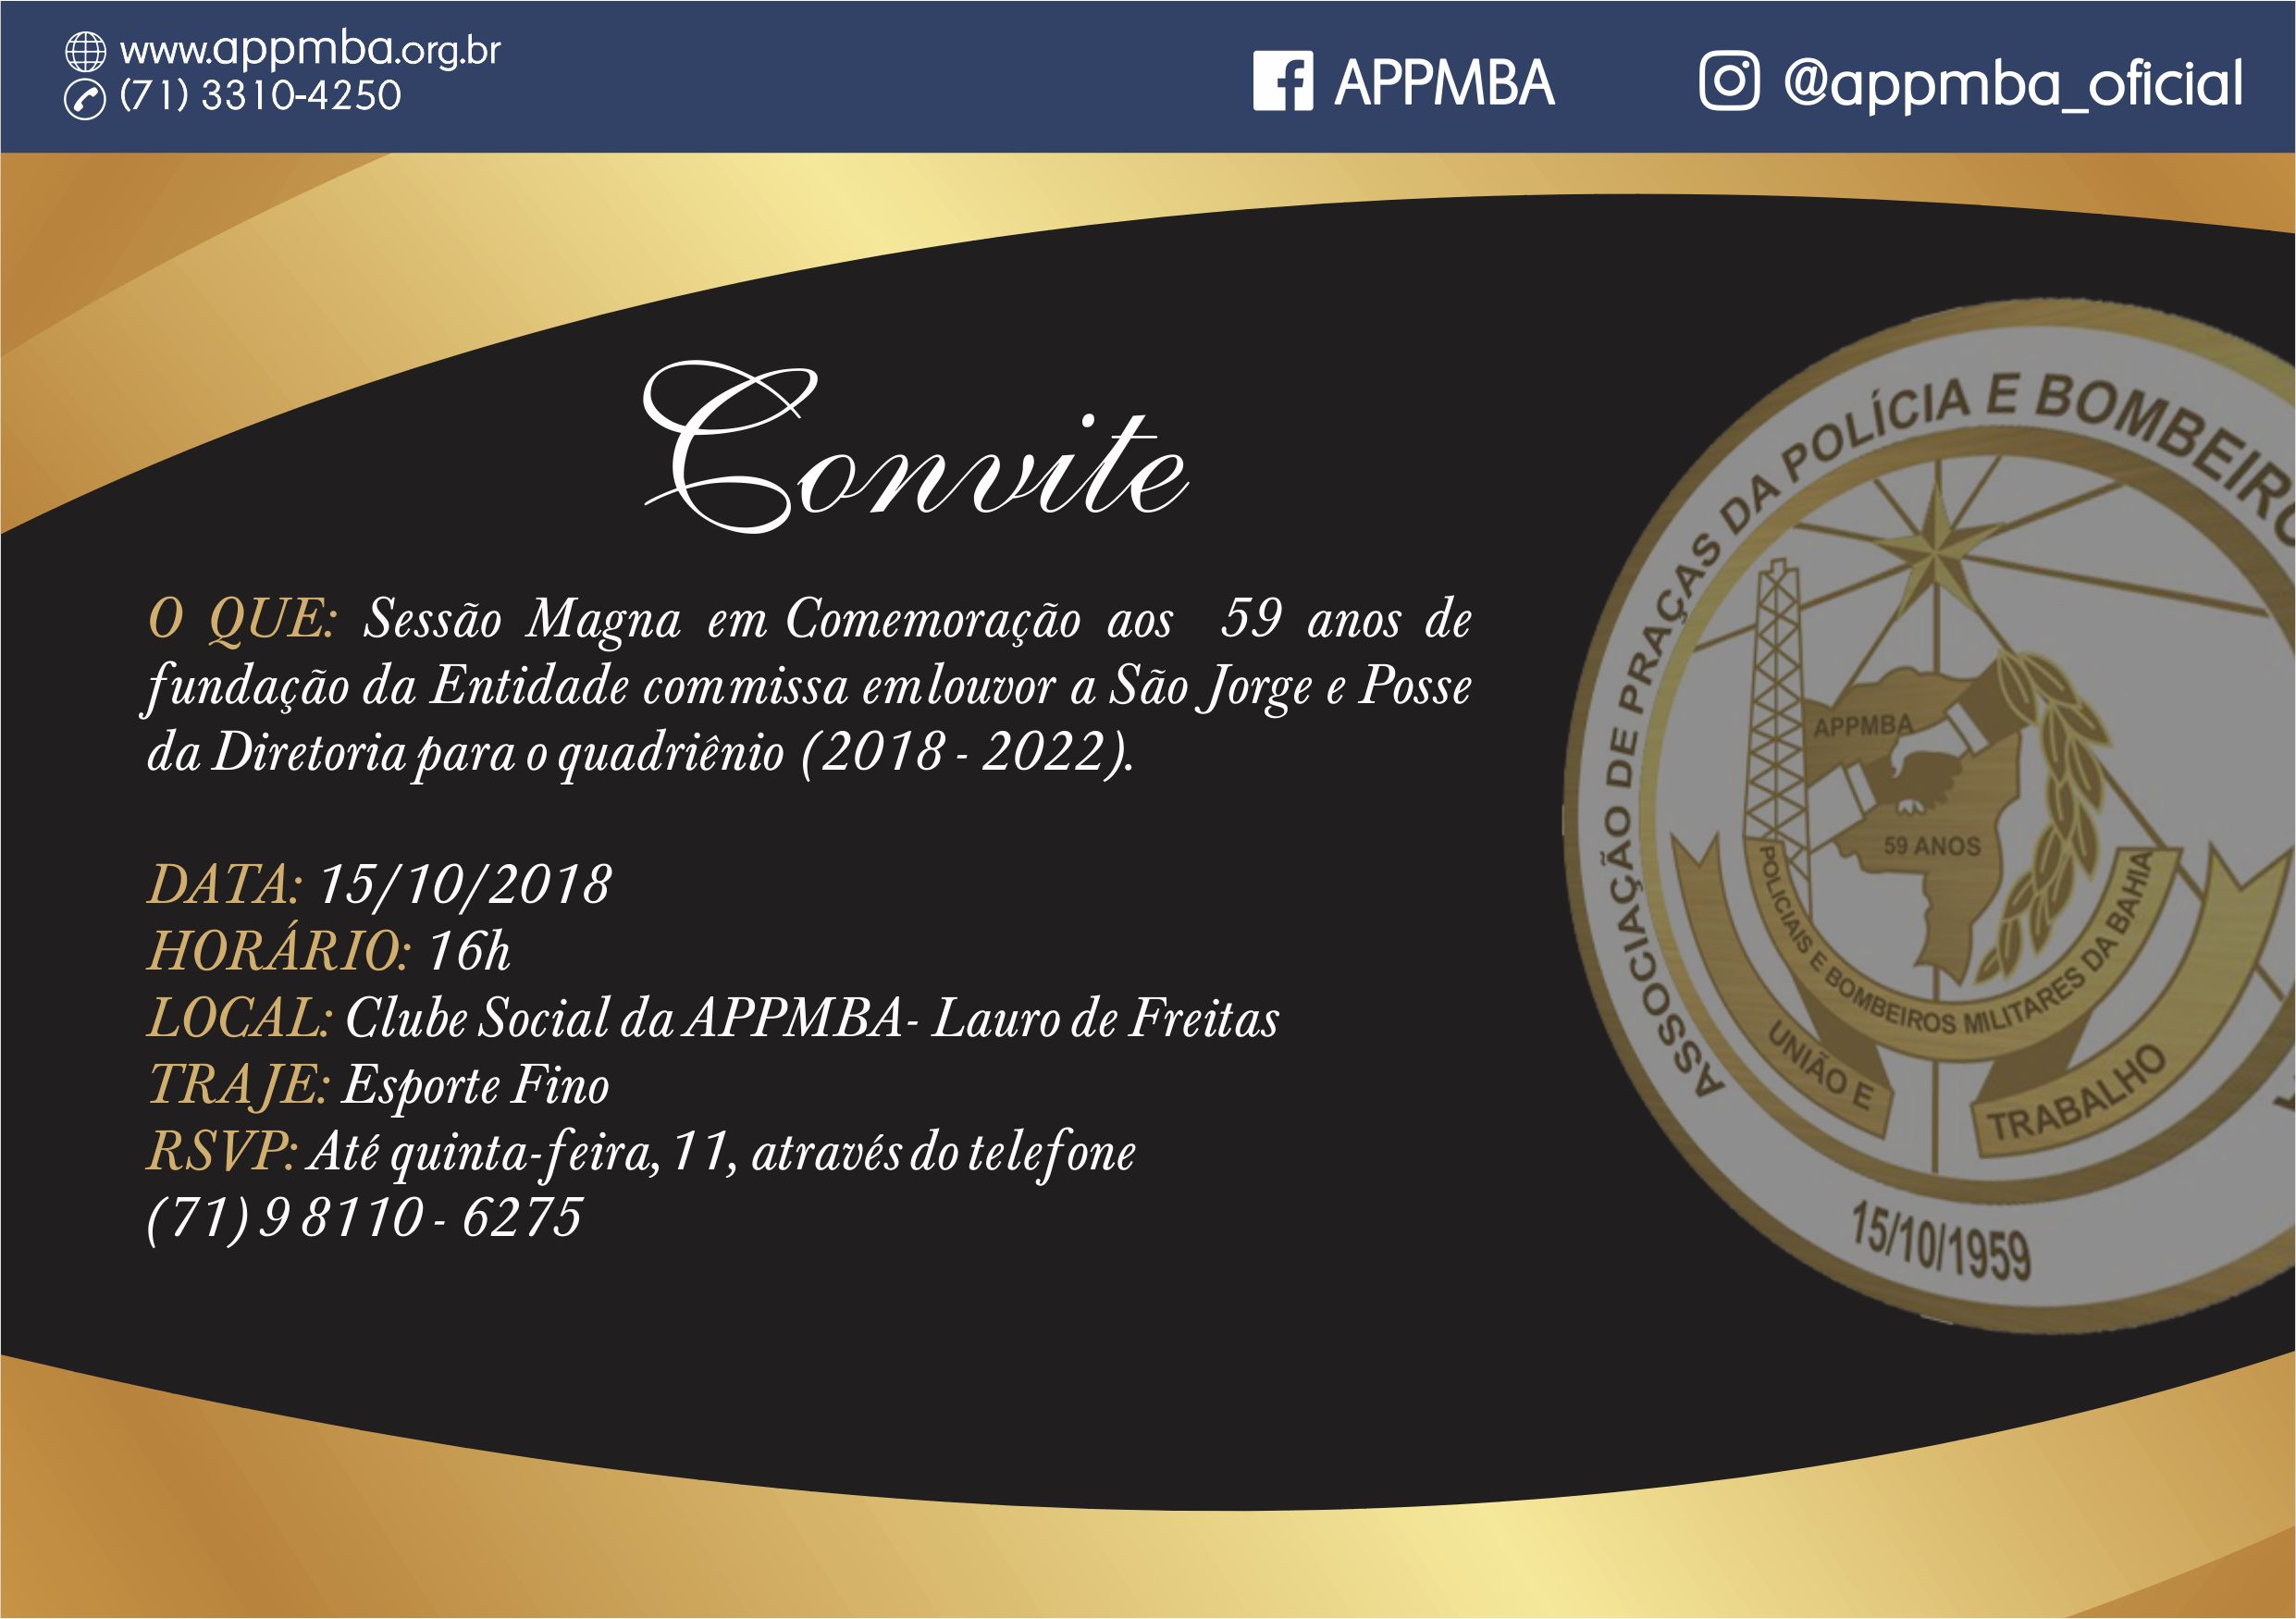 Convite - Posse da Diretoria (quadriênio 2018-2022)